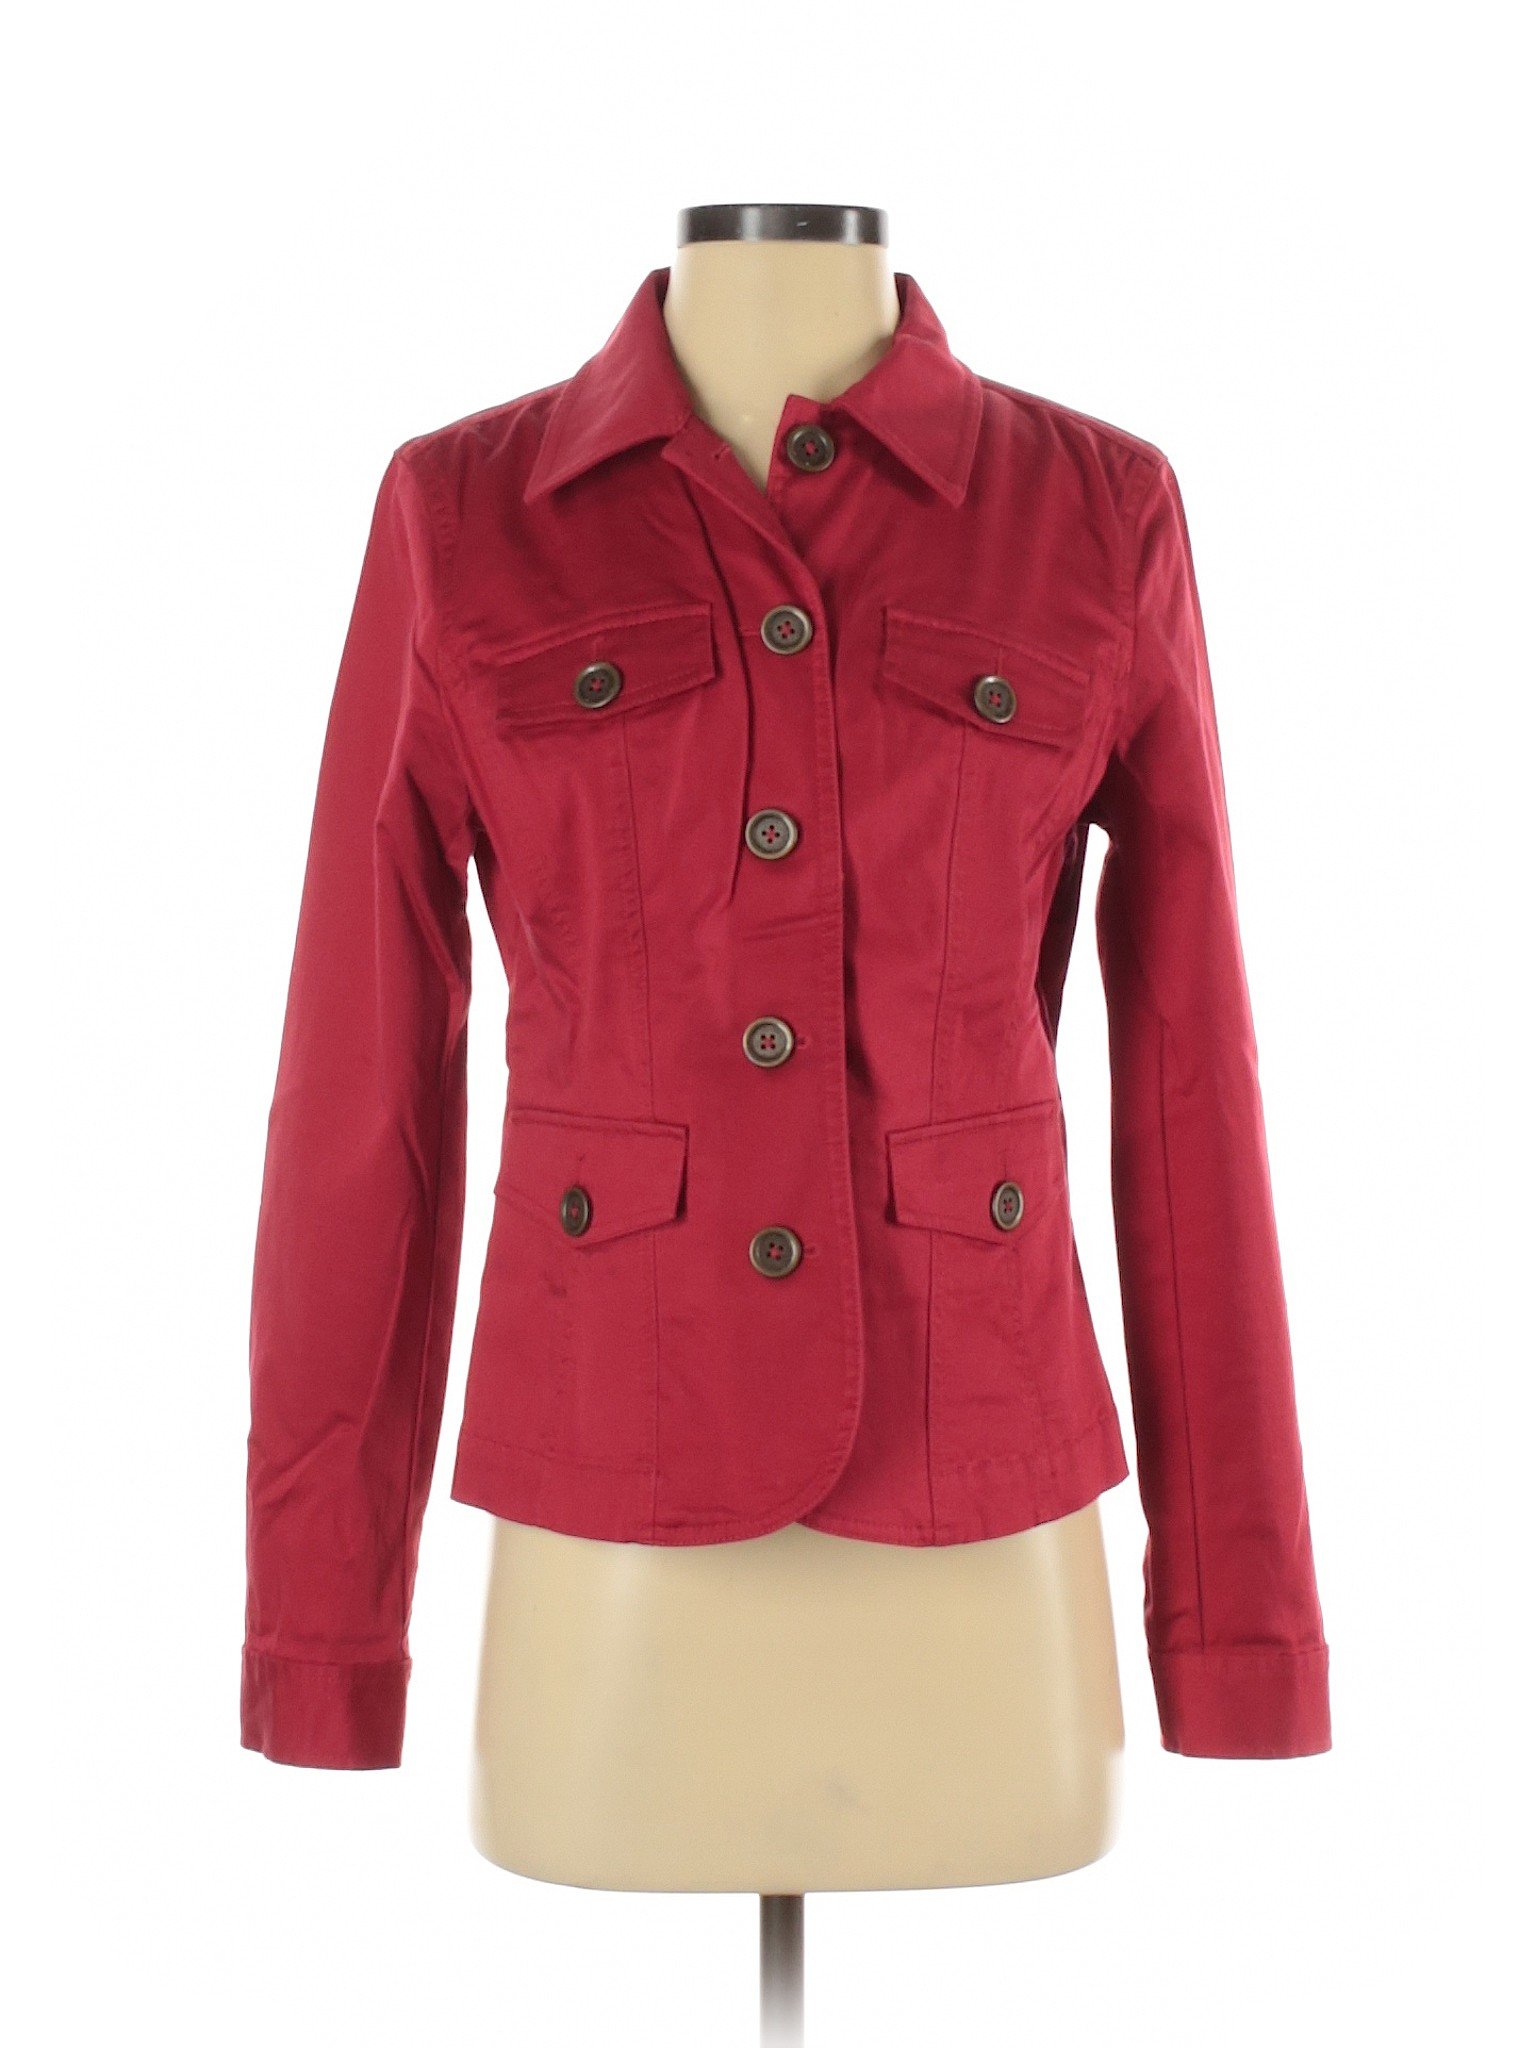 Jones New York Women Red Jacket S | eBay